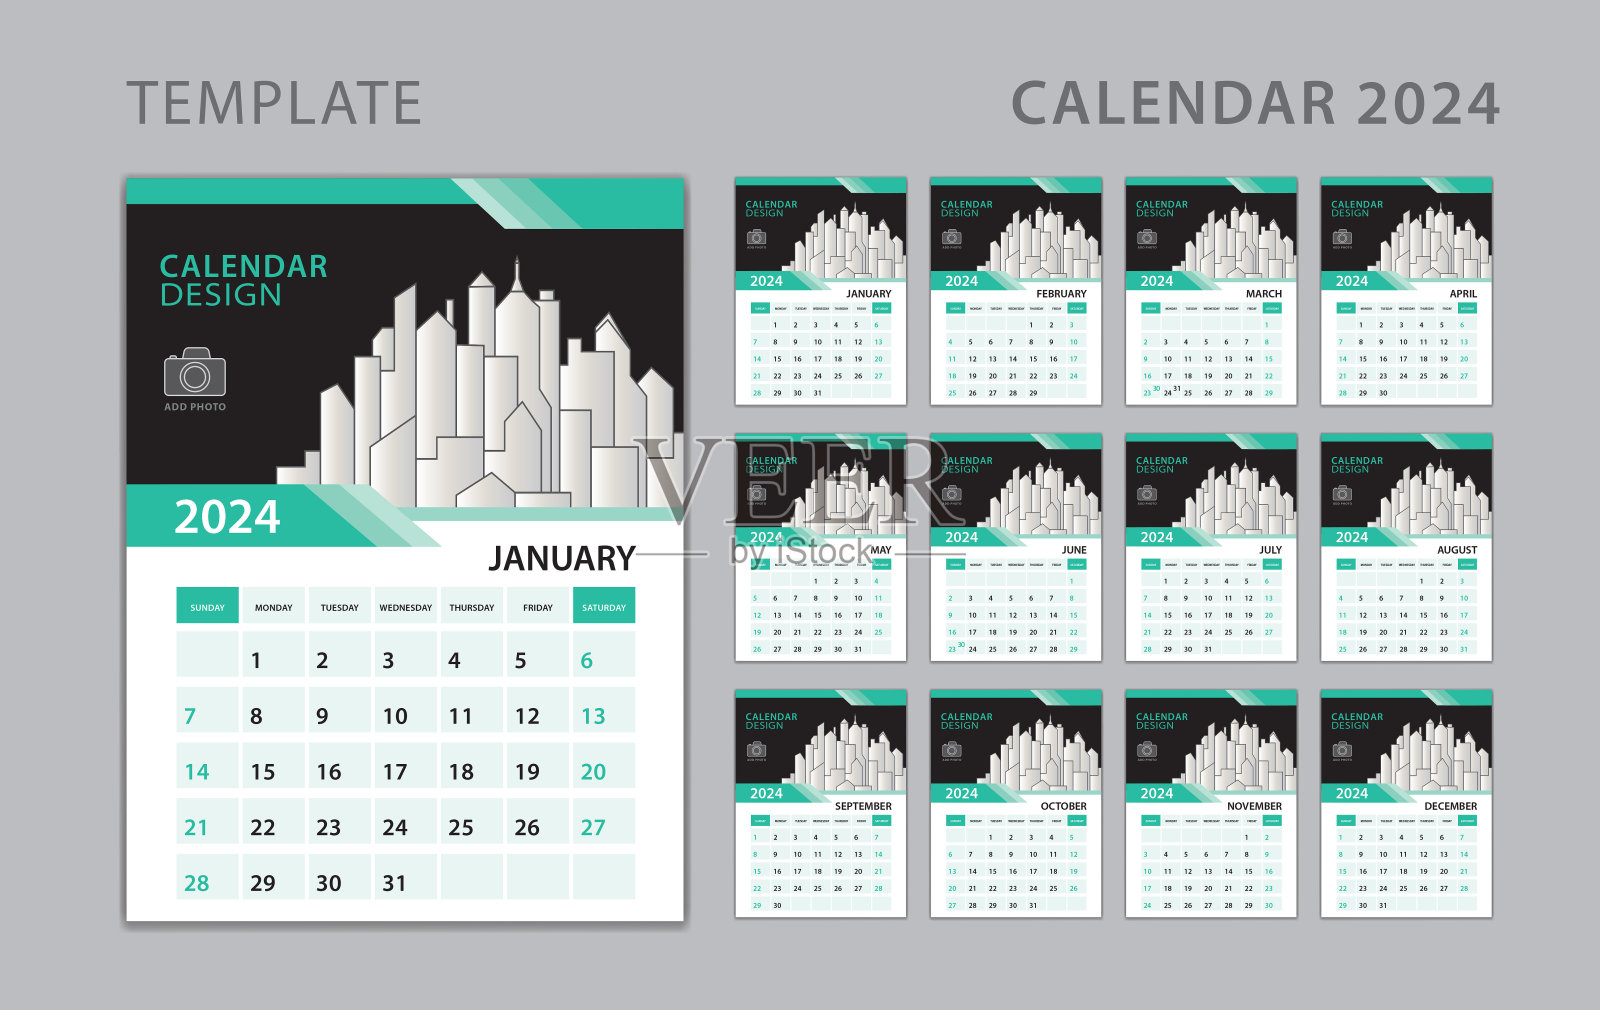 日历2024模板，设置办公桌日历设计与地点的照片和公司标志。墙上的日历。一周从周日开始。墙历2024年，一套12个月。创意日历设计设计模板素材